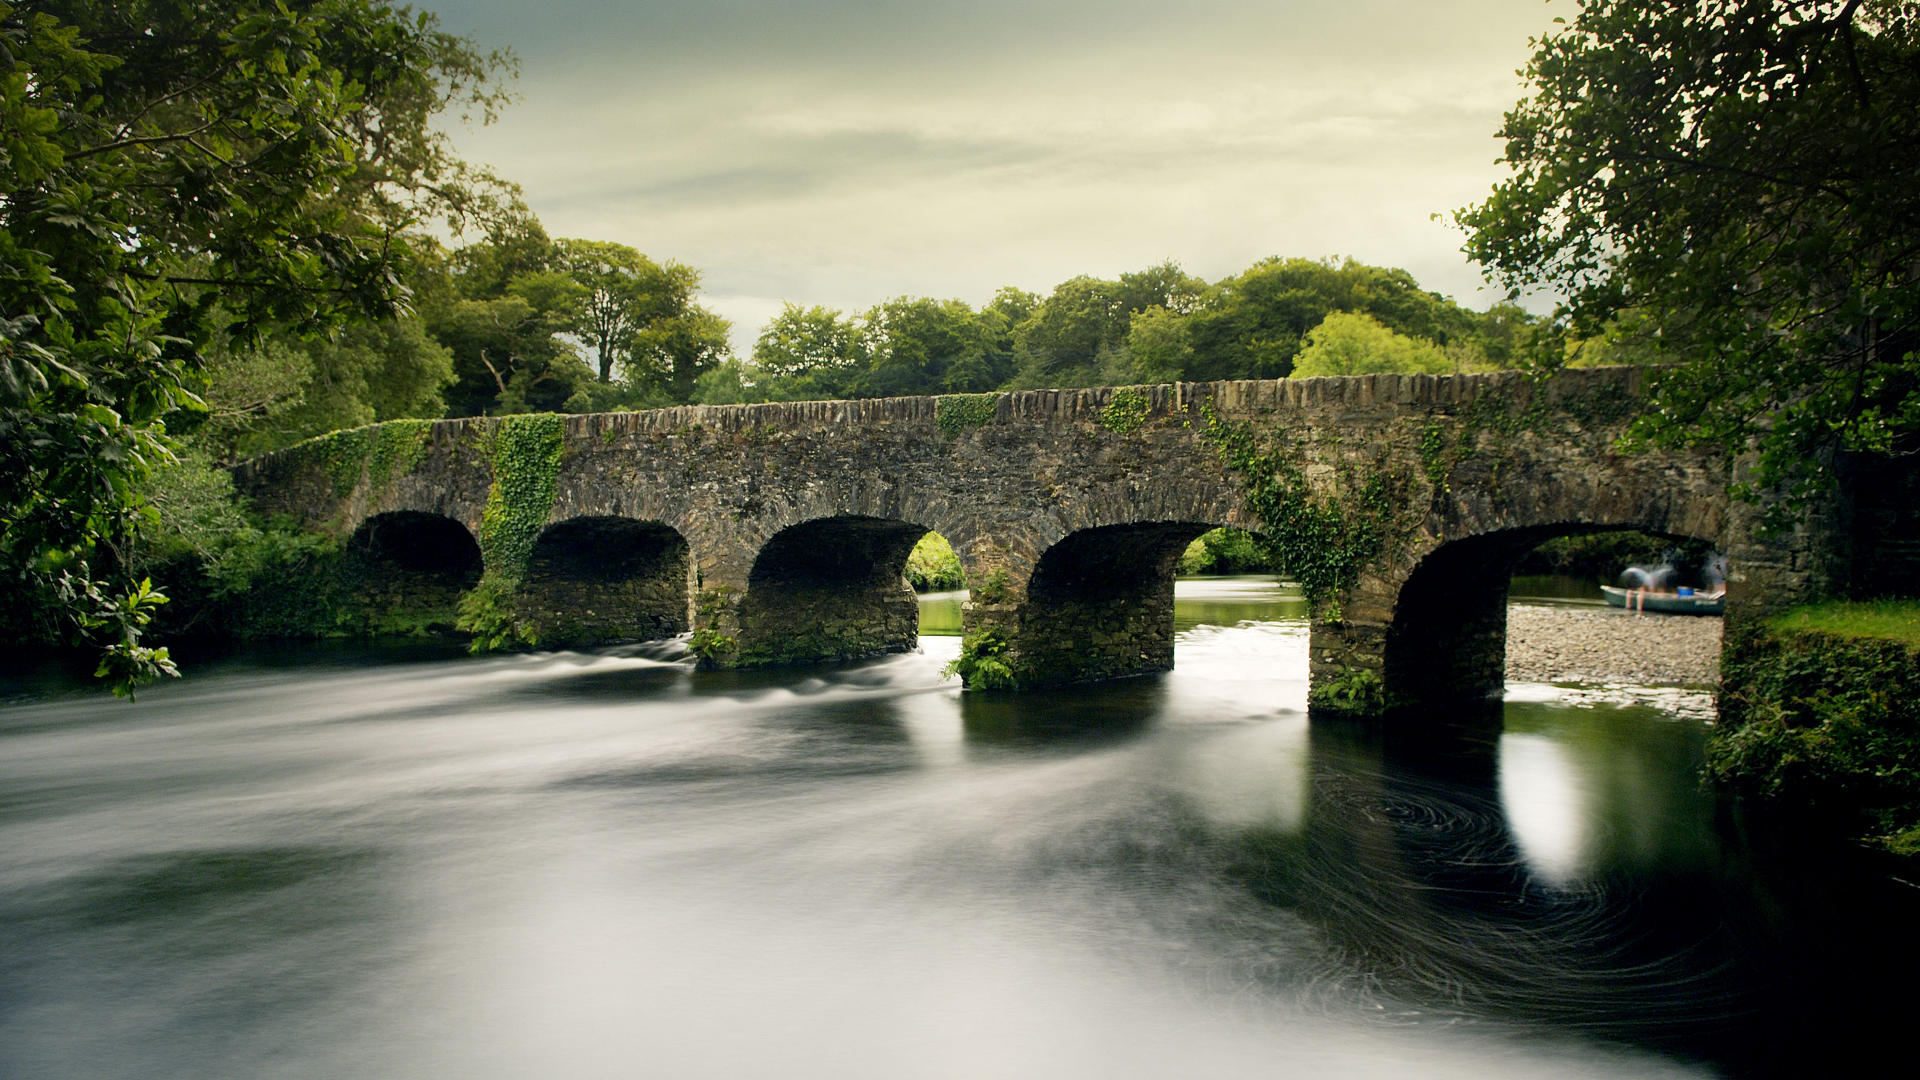 County Kerry Ireland là nơi tuyệt vời nhất để khám phá vẻ đẹp của tự nhiên với những đồi núi hùng vĩ, bãi biển hoang sơ và những con suối chảy như mây. Không chỉ có nền văn hóa và lịch sử đa dạng, Kerry còn được biết đến với những hoạt động giải trí thú vị như chơi golf, câu cá và bơi lội.